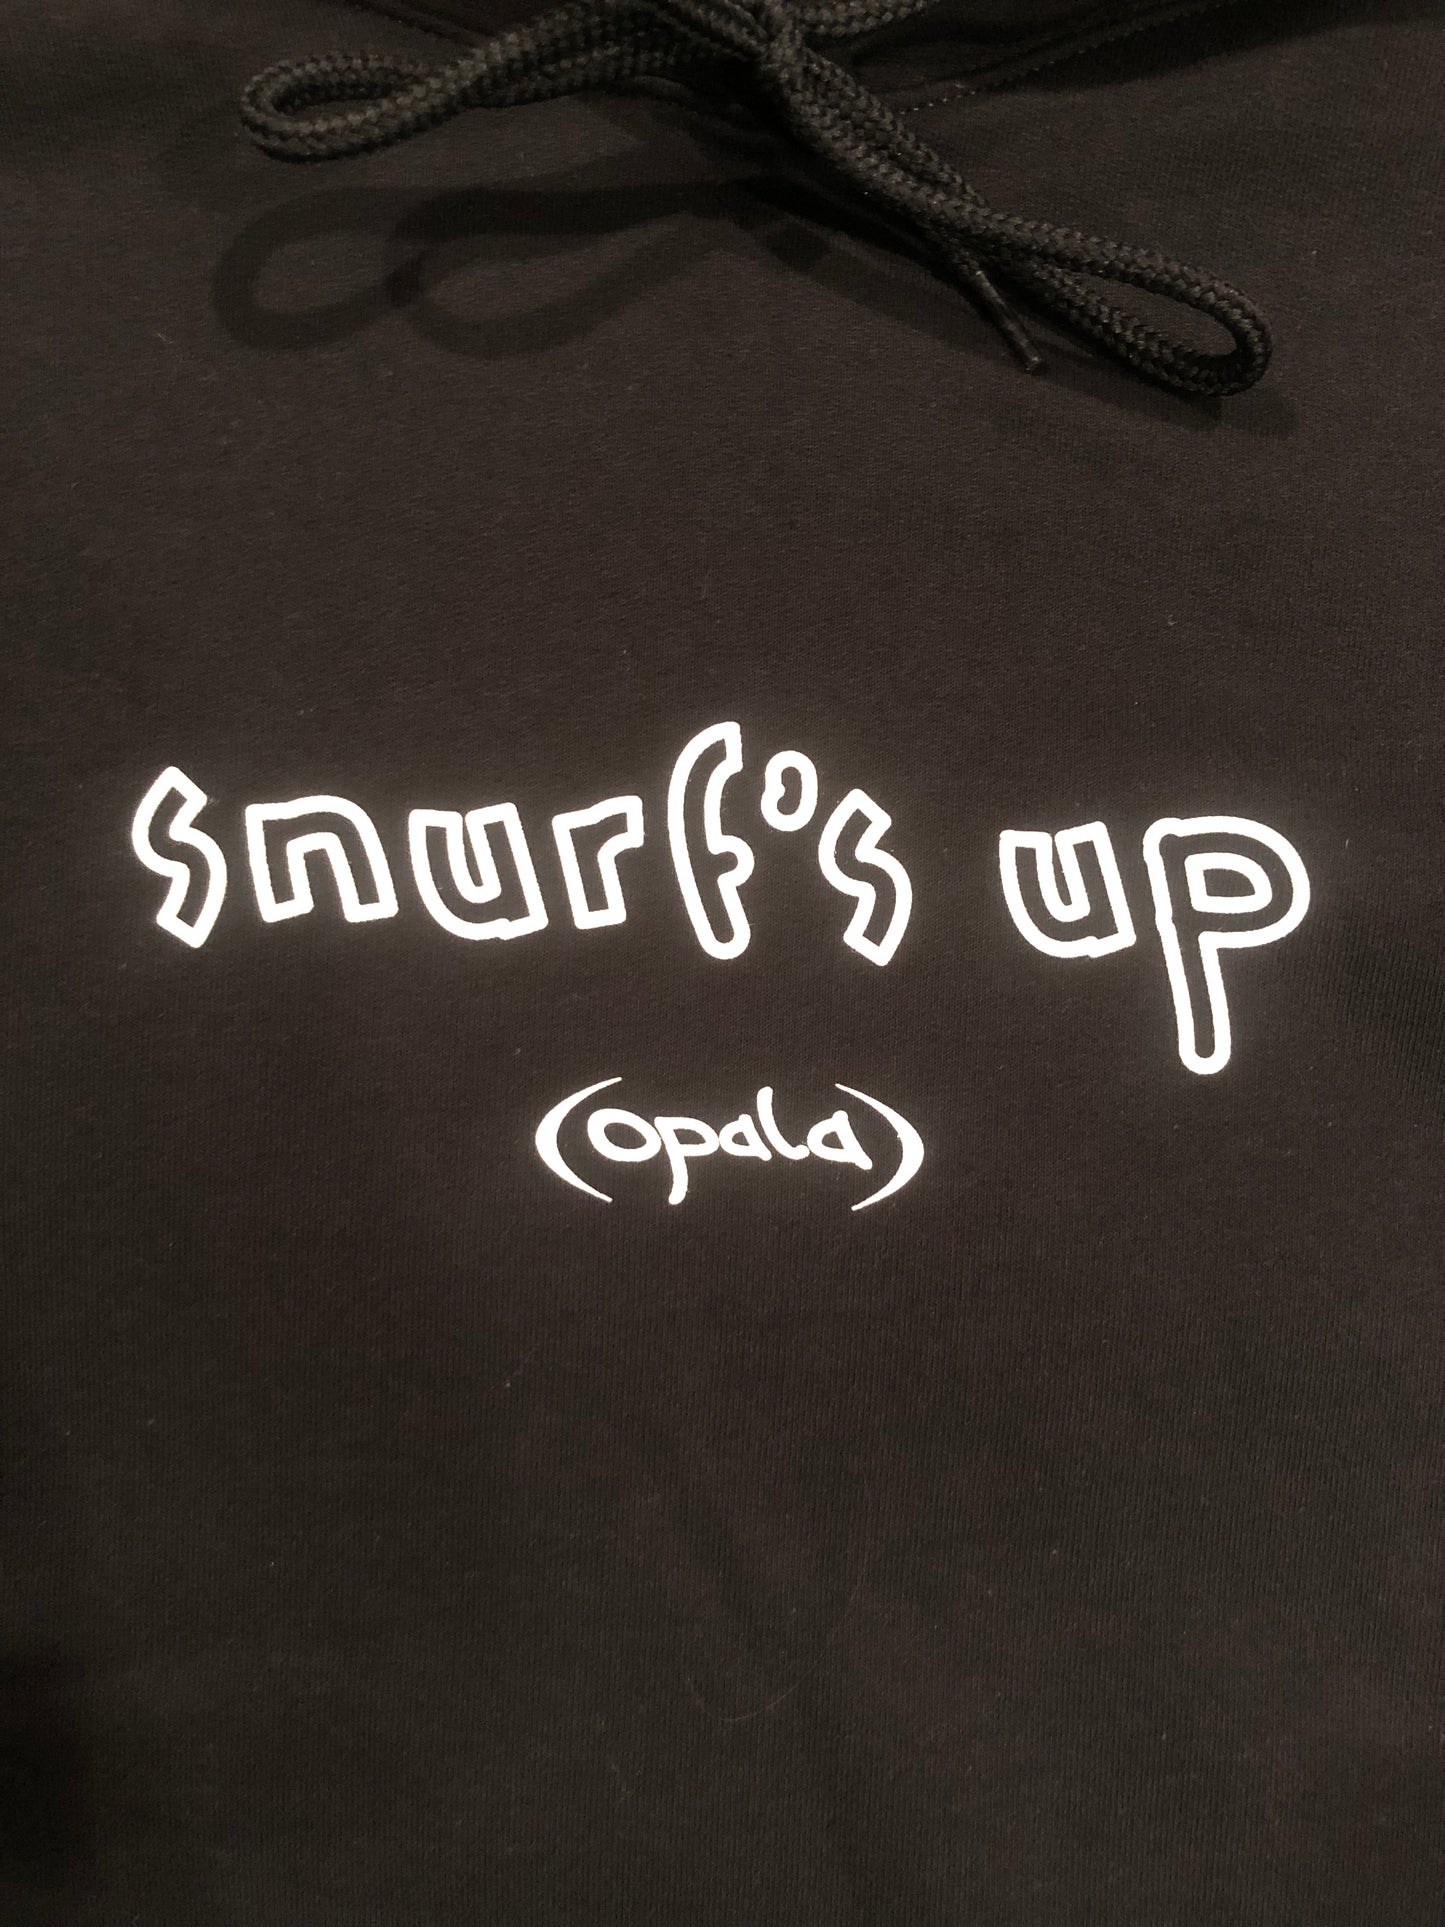 Snurf’s Up Hoody (Black)